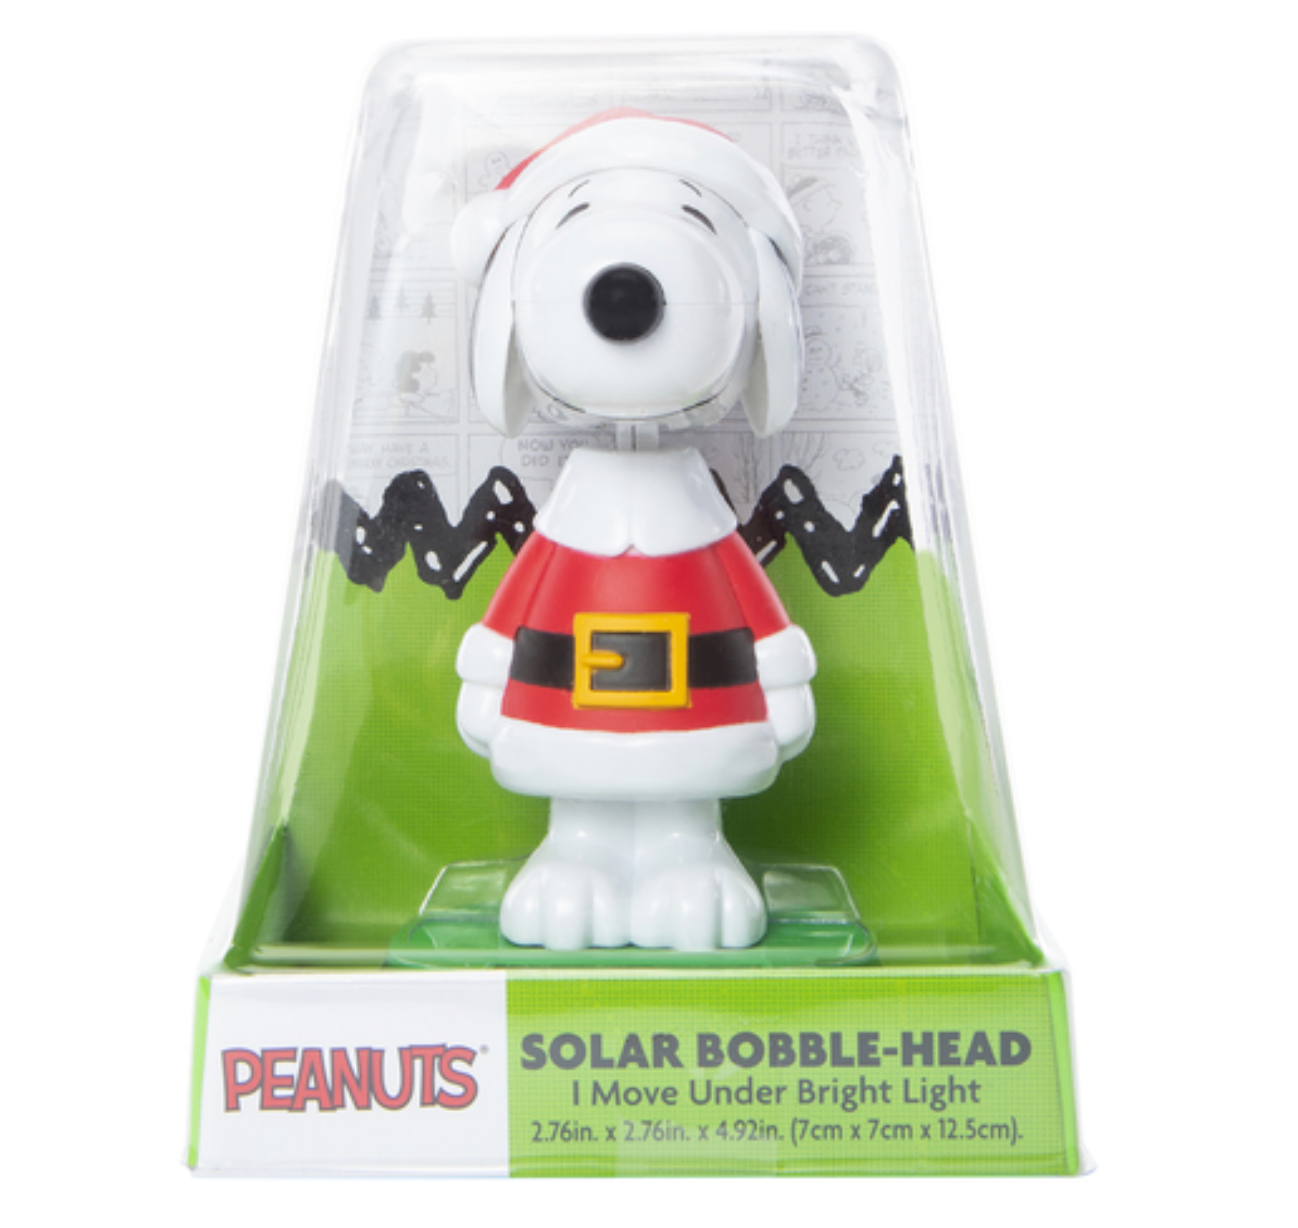 Peanuts Santa Snoopy Merry Christmas Solar Bobblehead New with Box